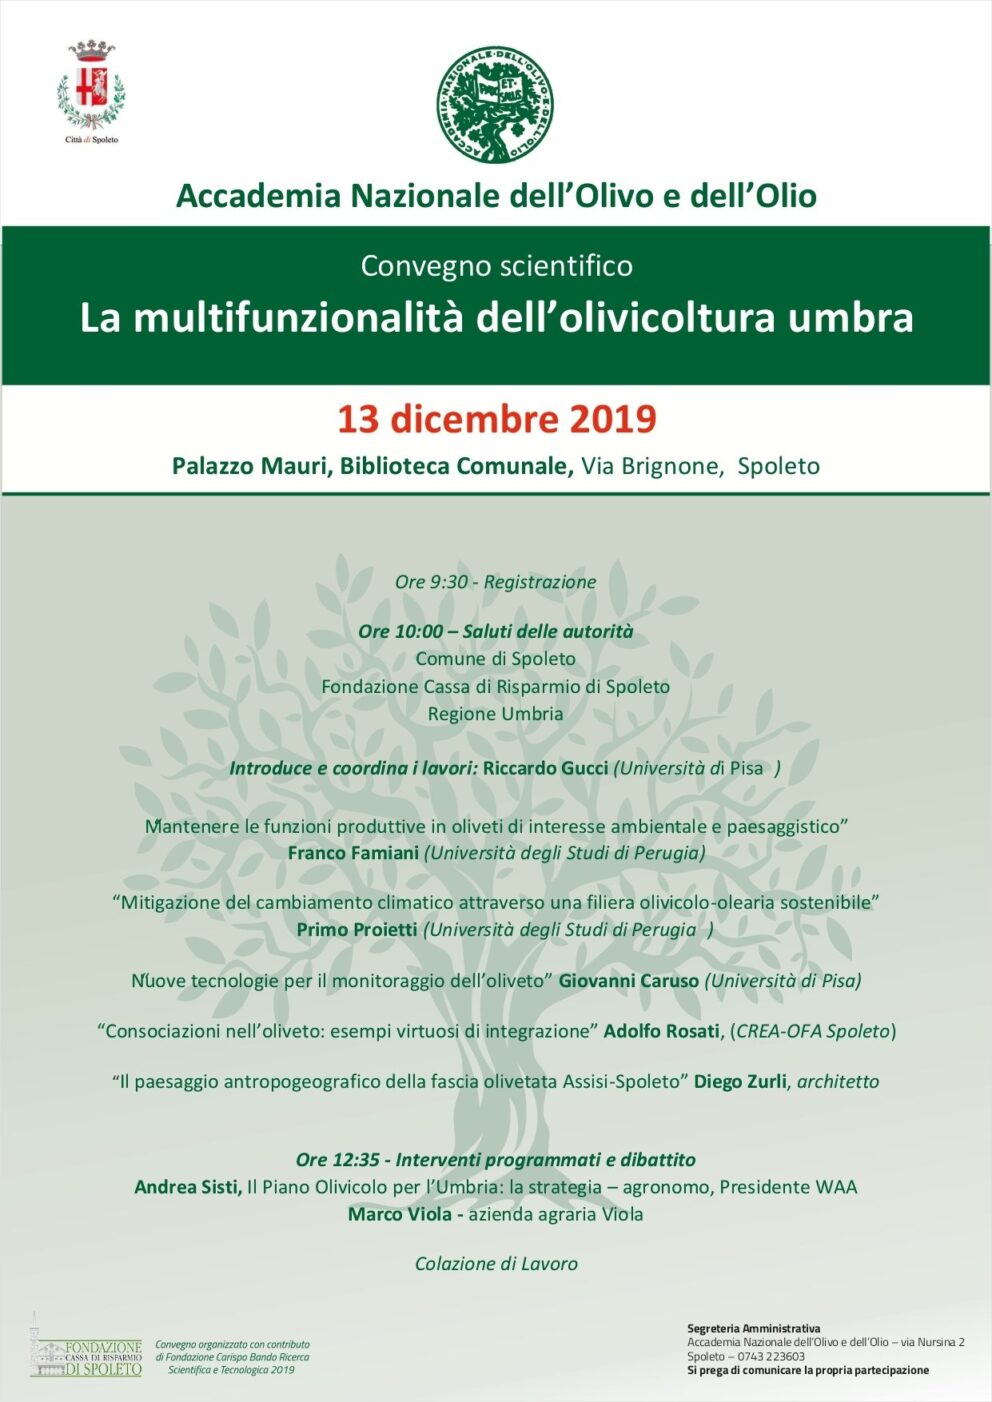 La multifunzionalità dell’olivicoltura umbra, il convegno dell’Accademia Nazionale dell’Olivo e Olio